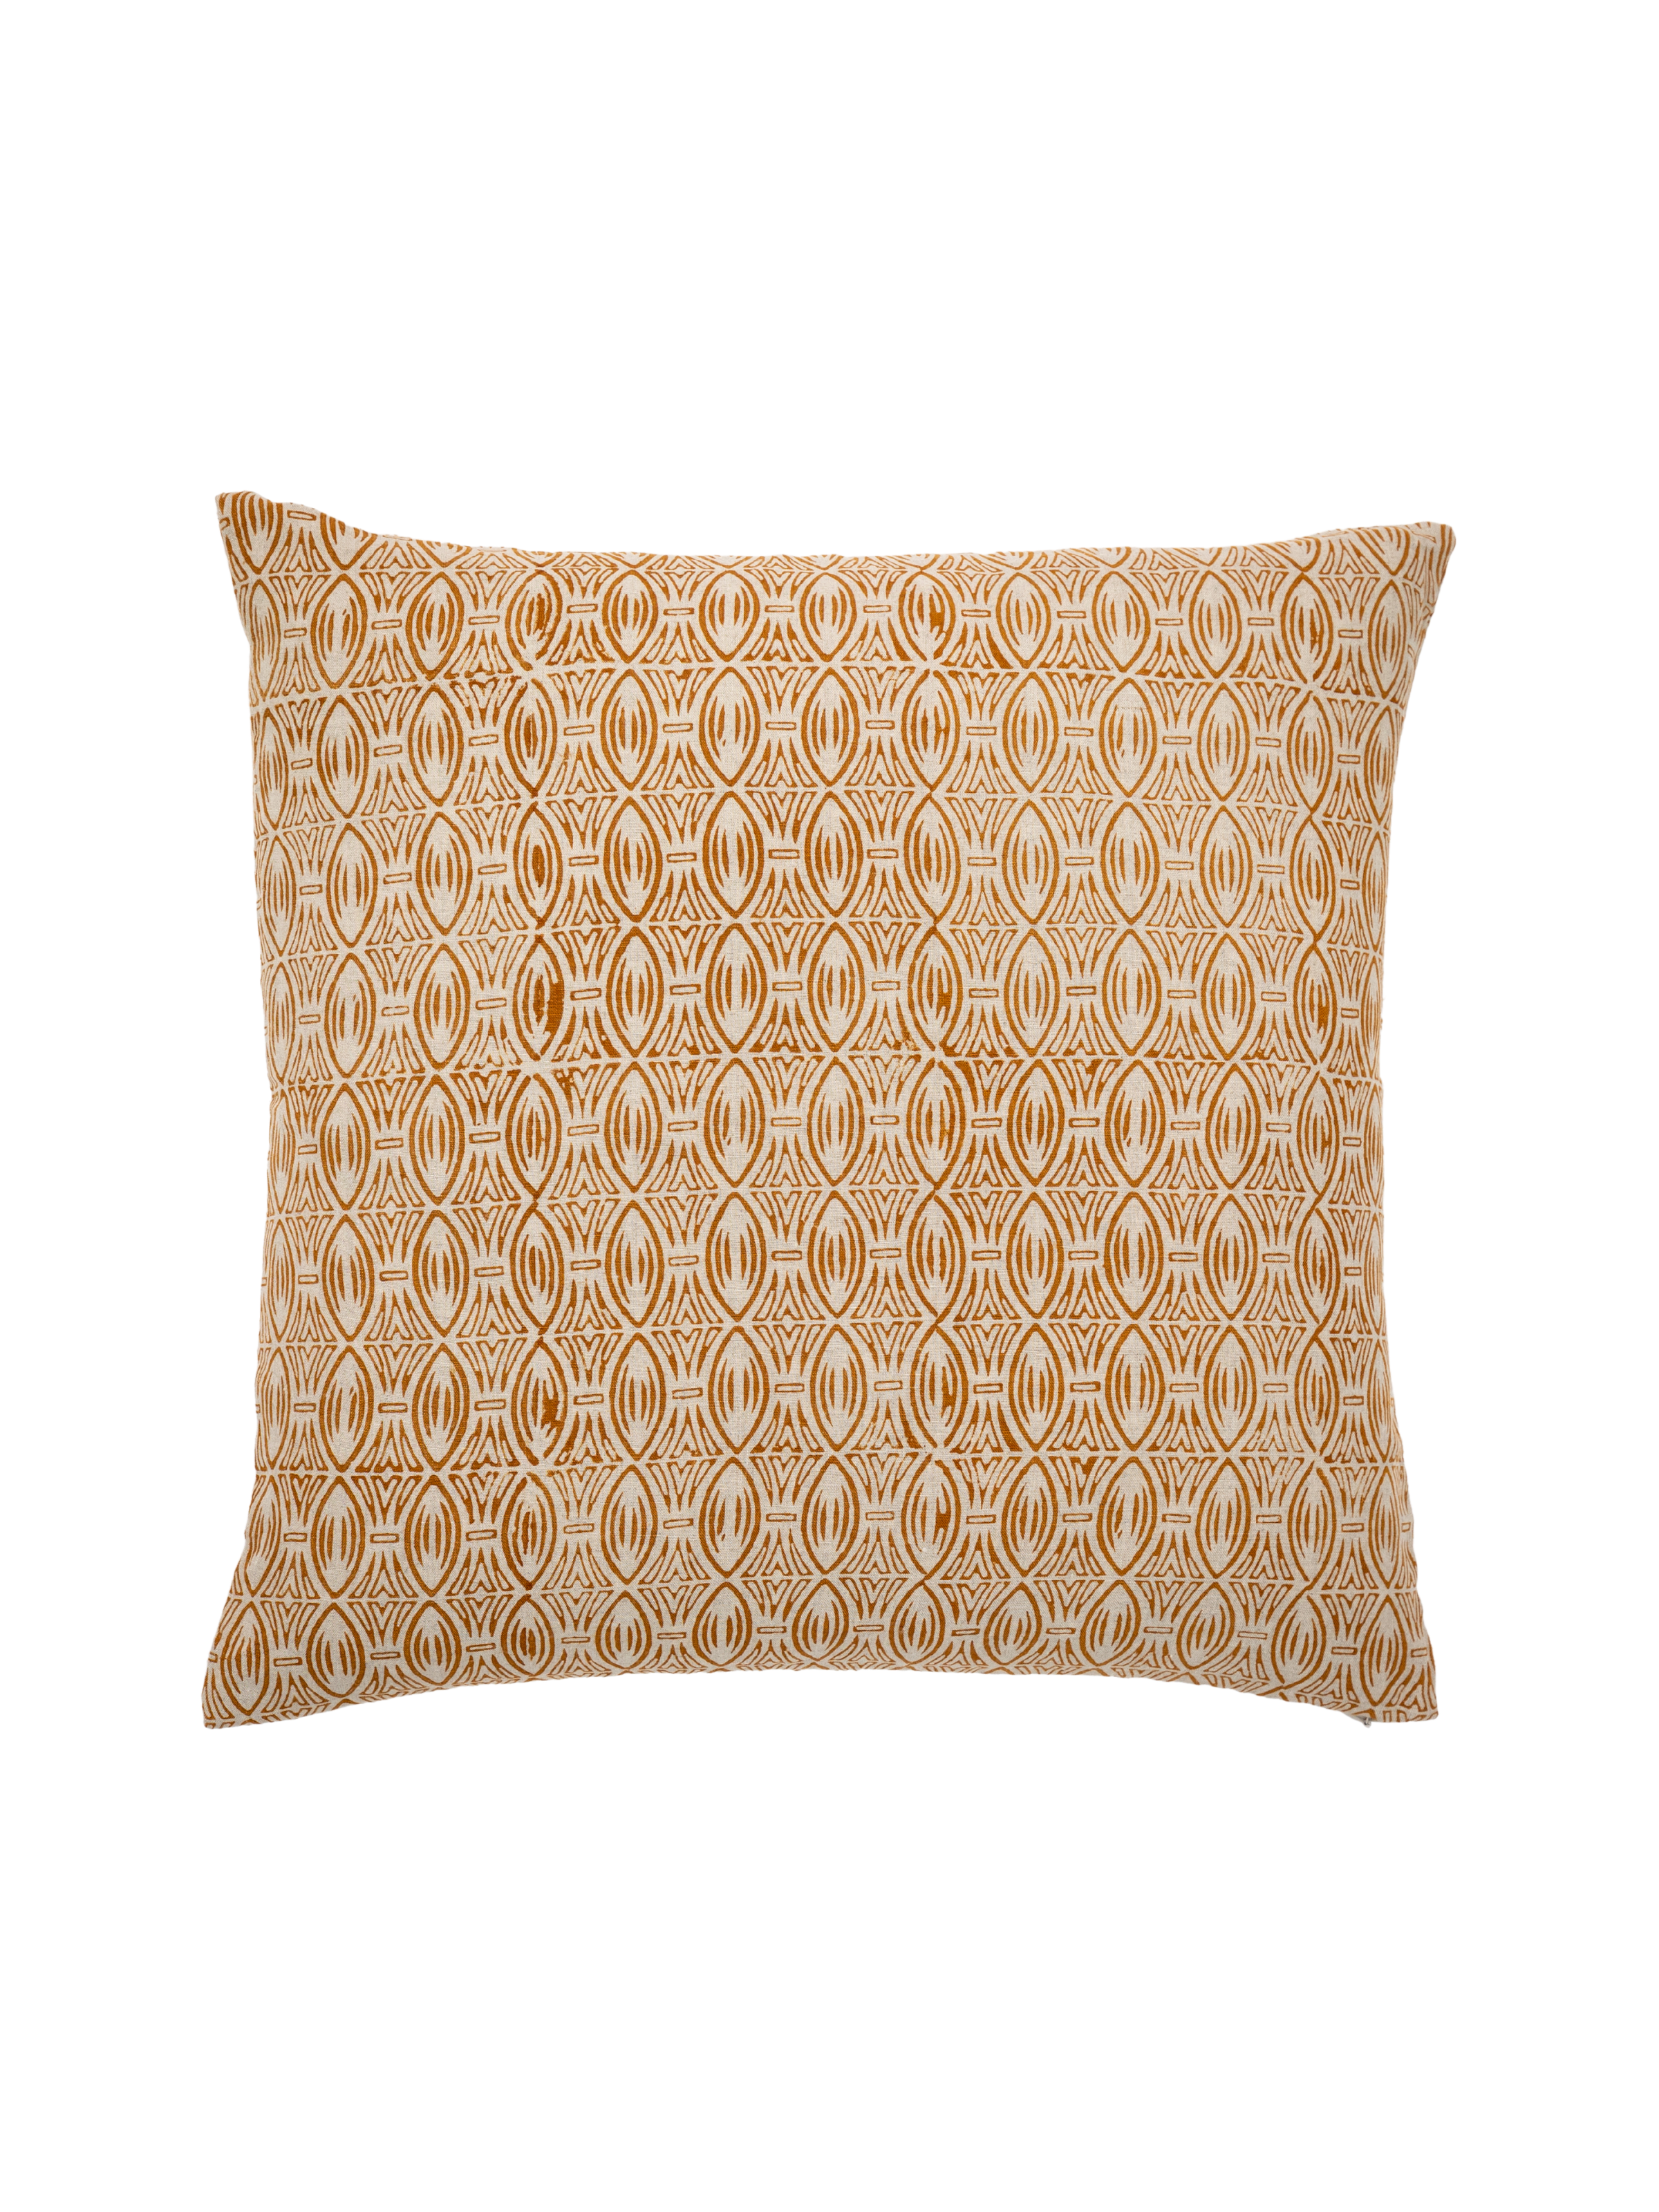 Zulu Ochre Decorative Pillow Cover